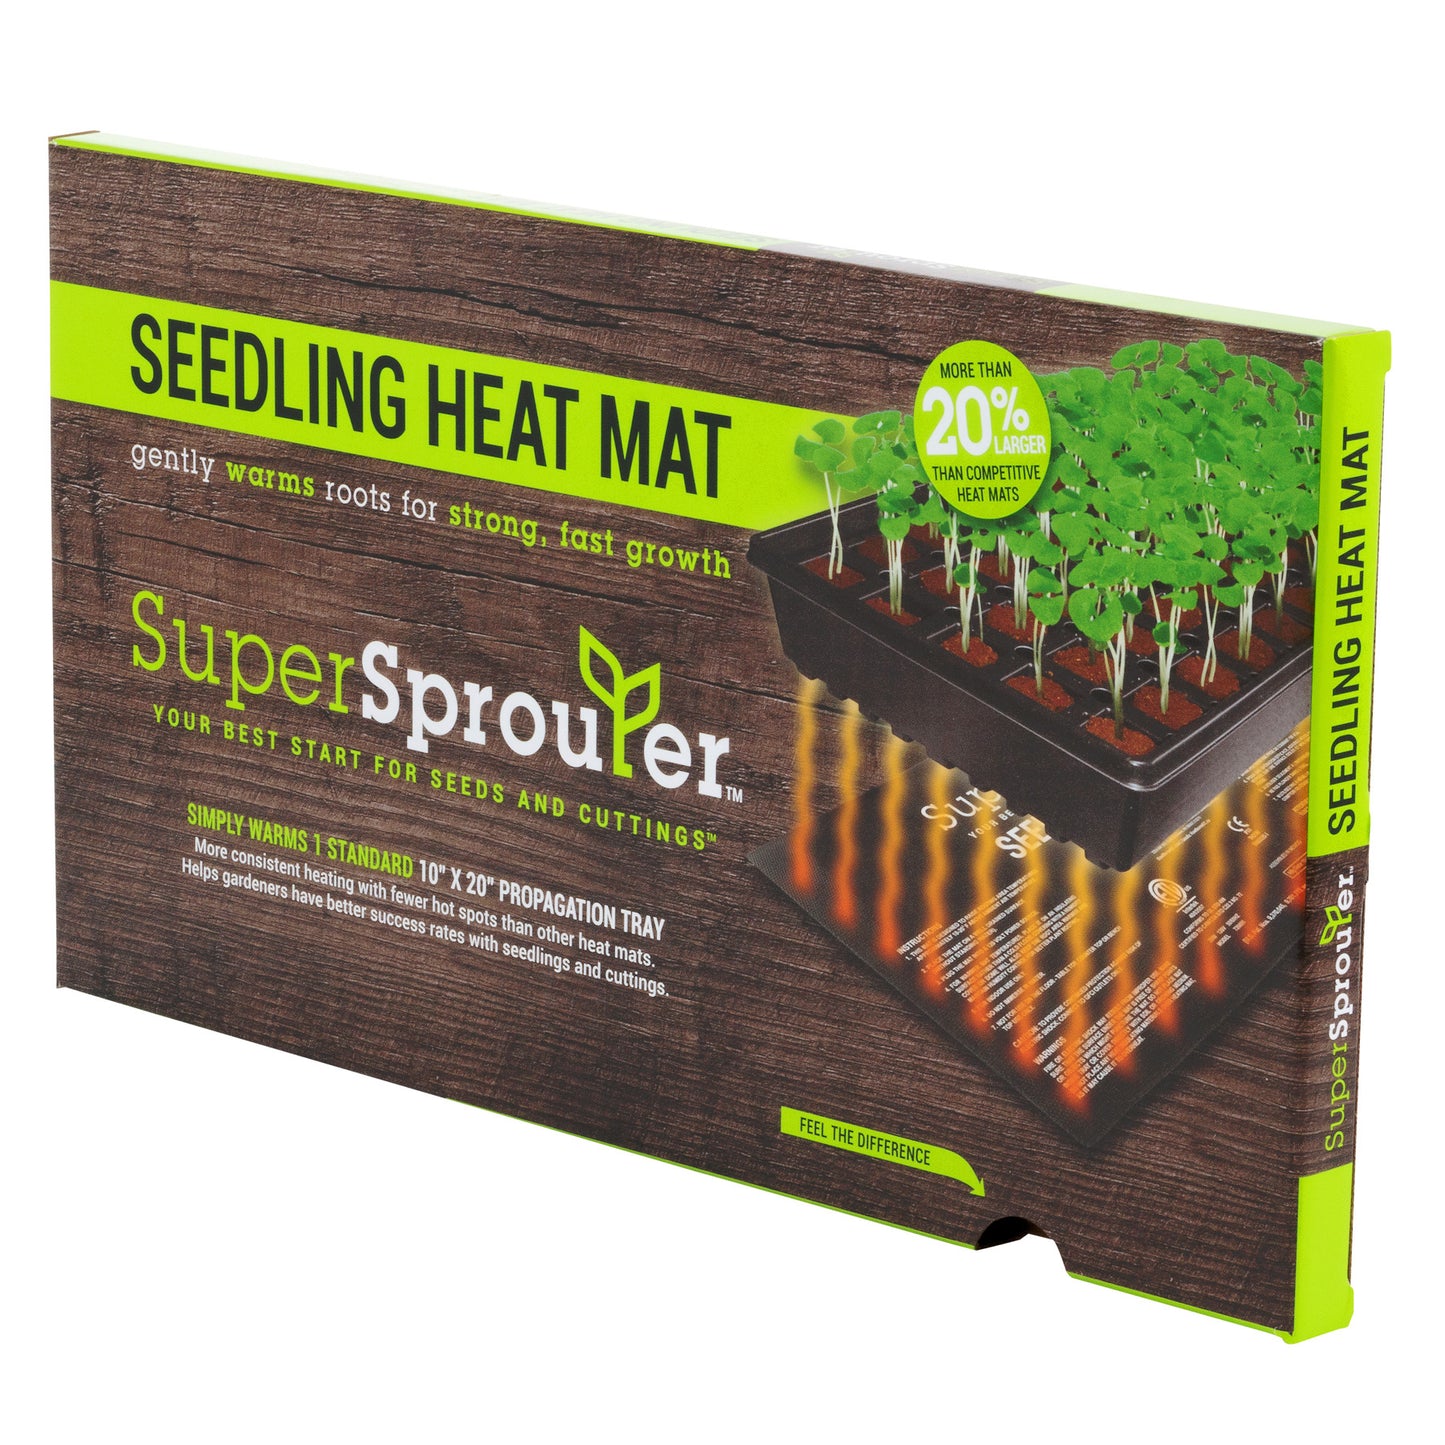 Super Sprouter Heat Mat 10x21-10x21